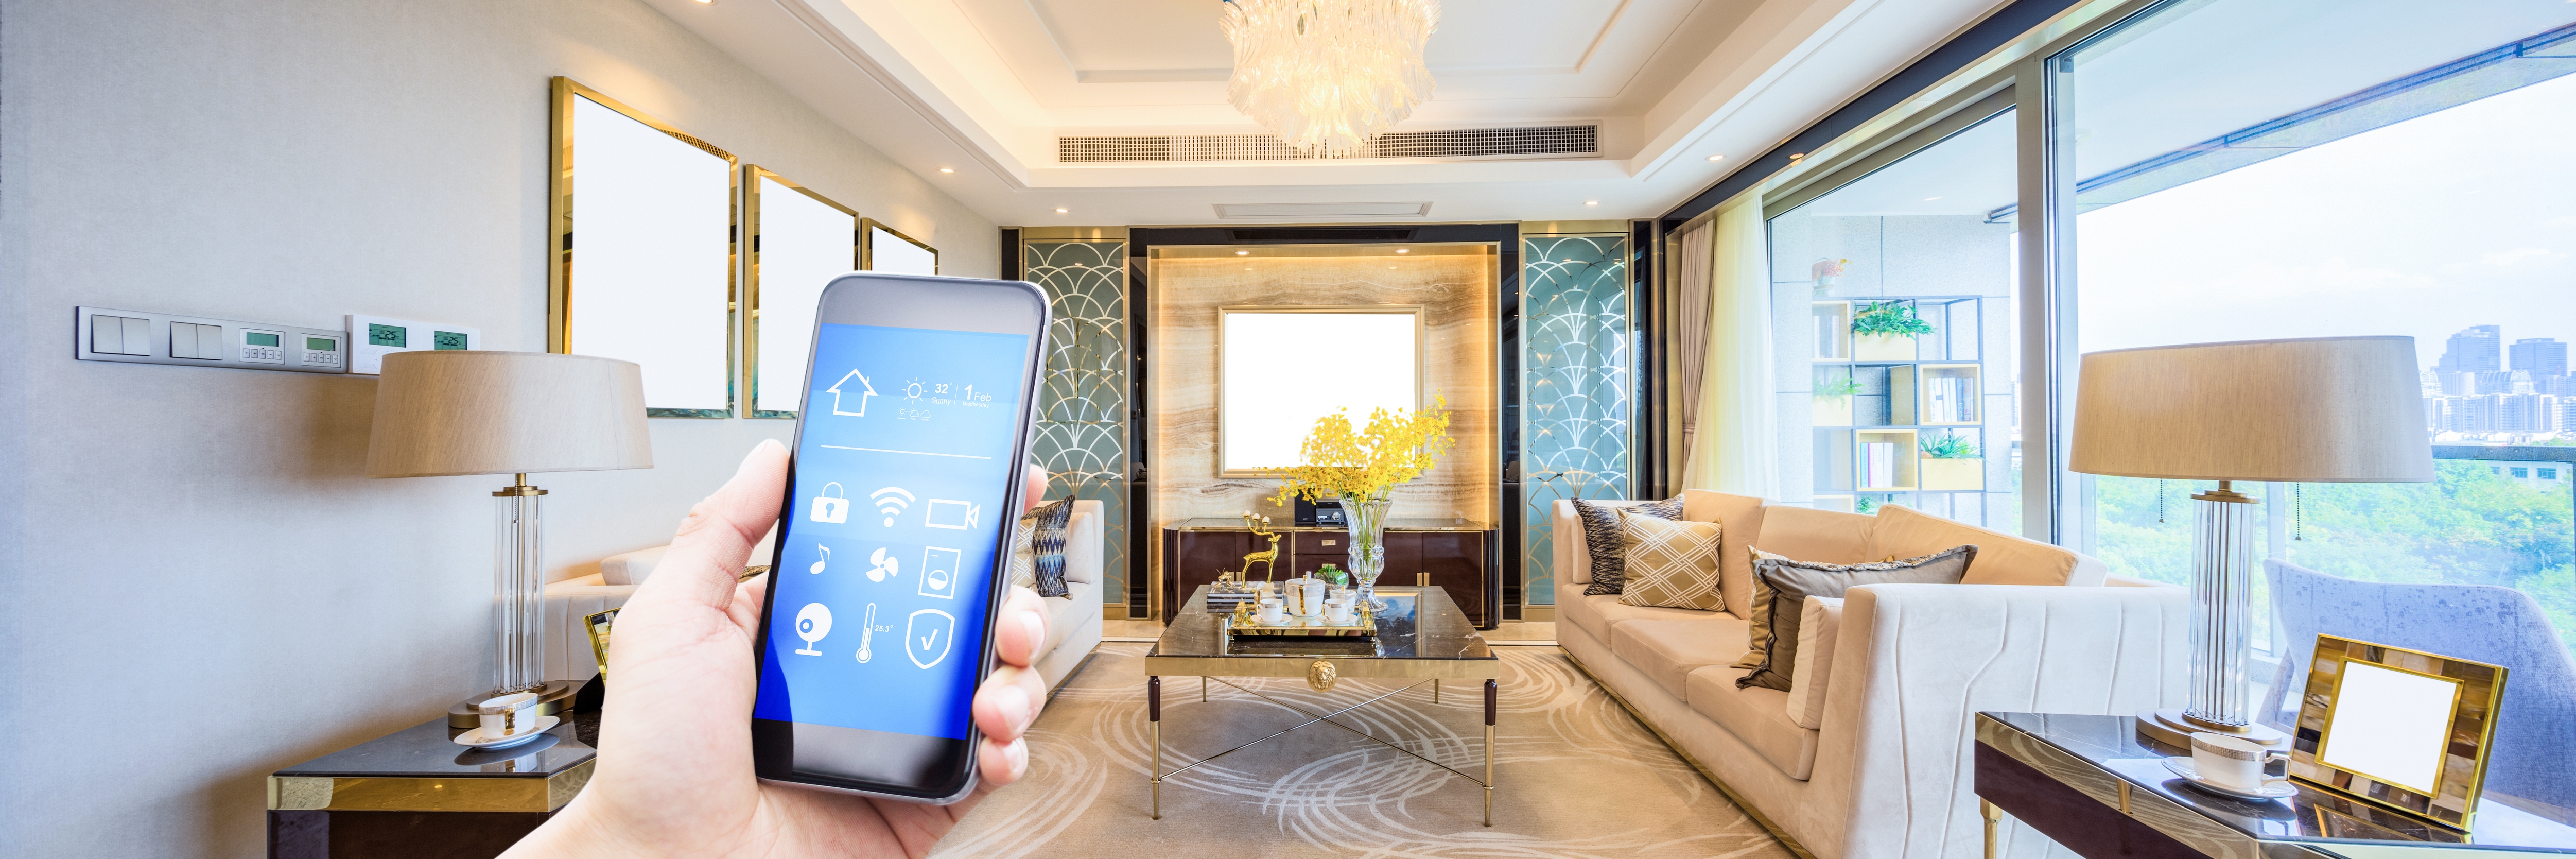 Une maison intelligente moderne avec des appareils connectés tels que des caméras de sécurité et des thermostats contrôlés sans fil à partir d'appareils mobiles